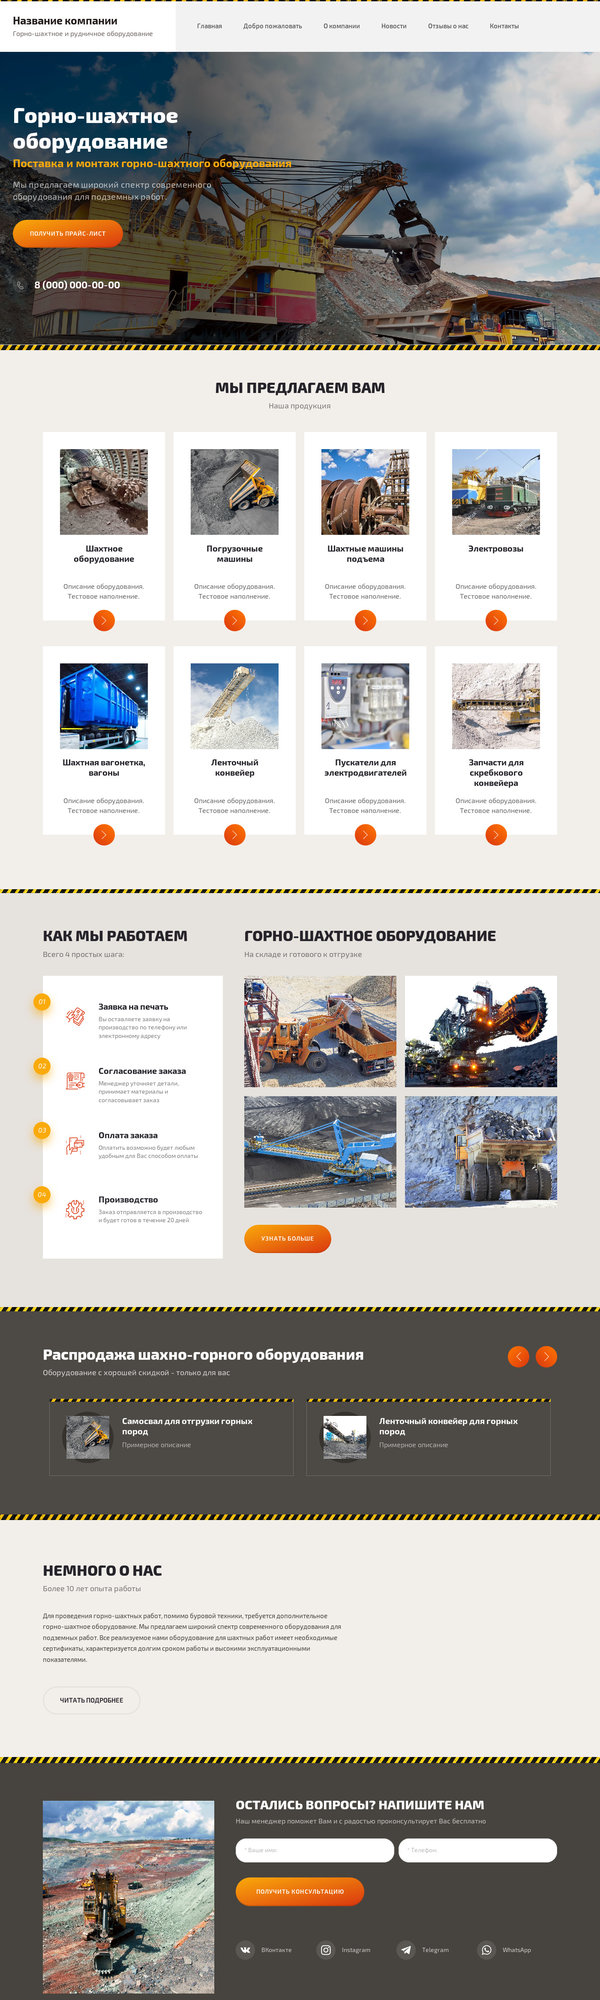 Готовый Сайт-Бизнес № 2475088 - Горно-шахтное оборудование (Десктопная версия)